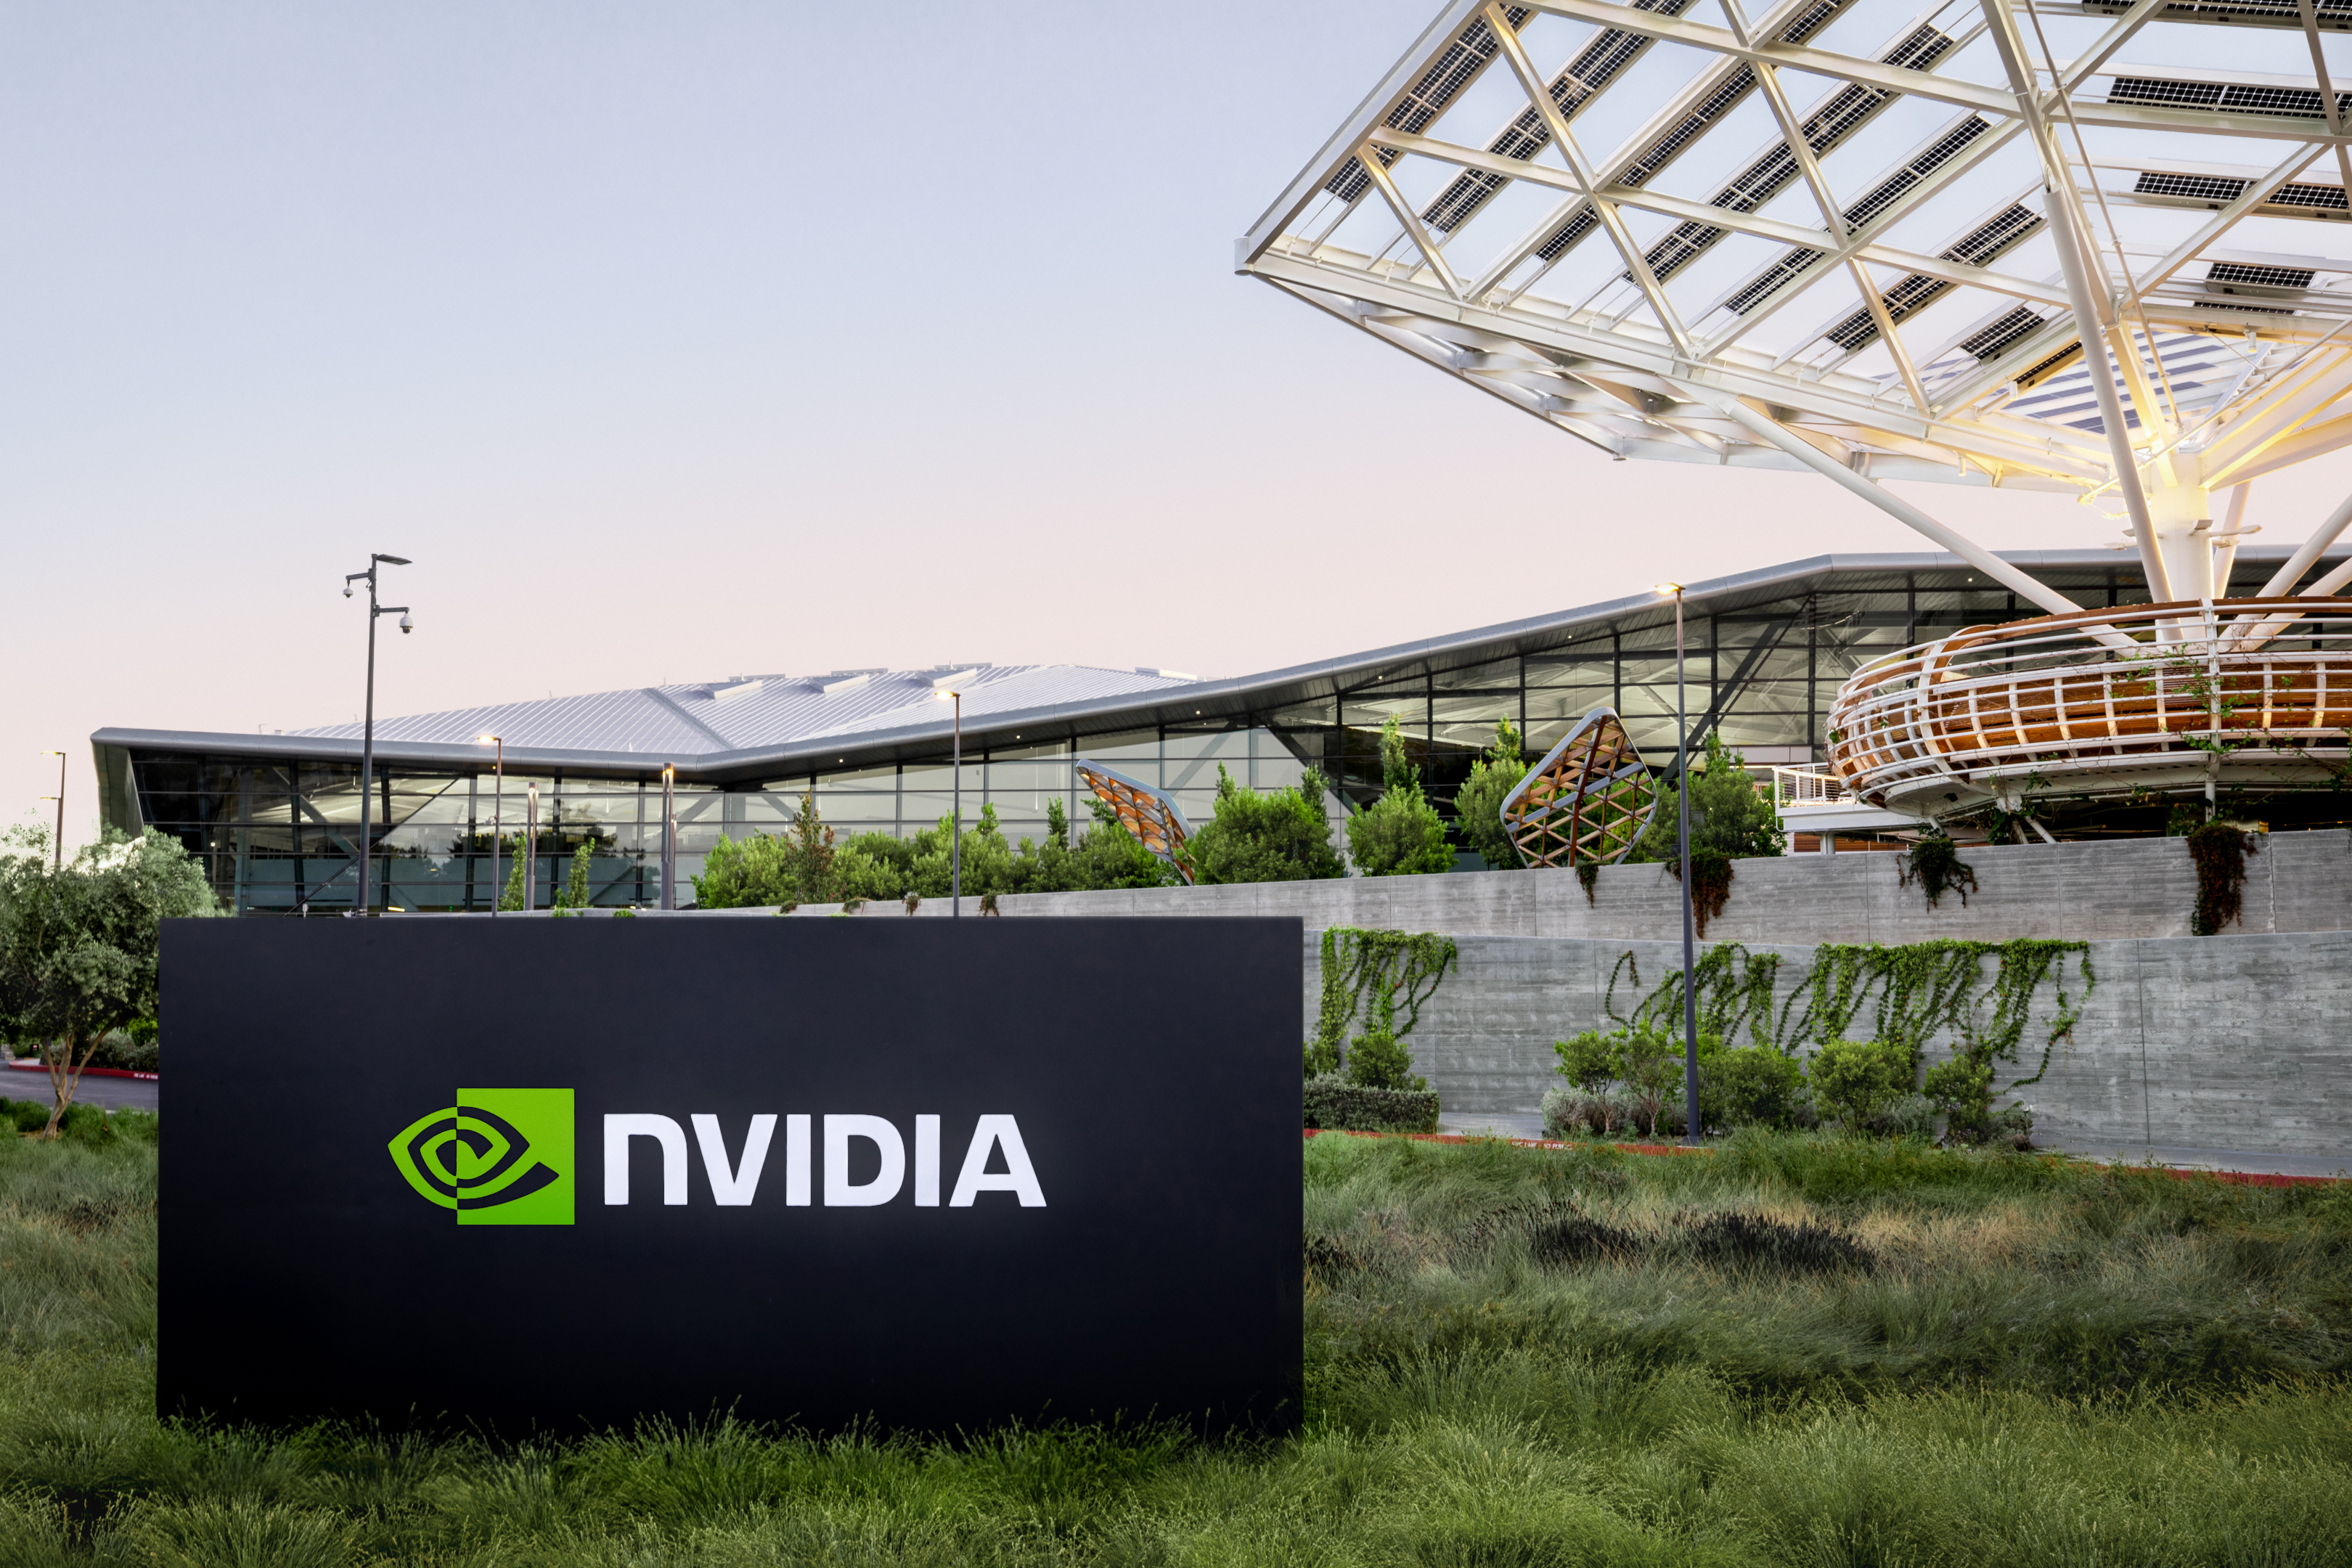 NVIDIA's markedsværdi overskrider for første gang 2 billioner dollars midt i AI-hypen